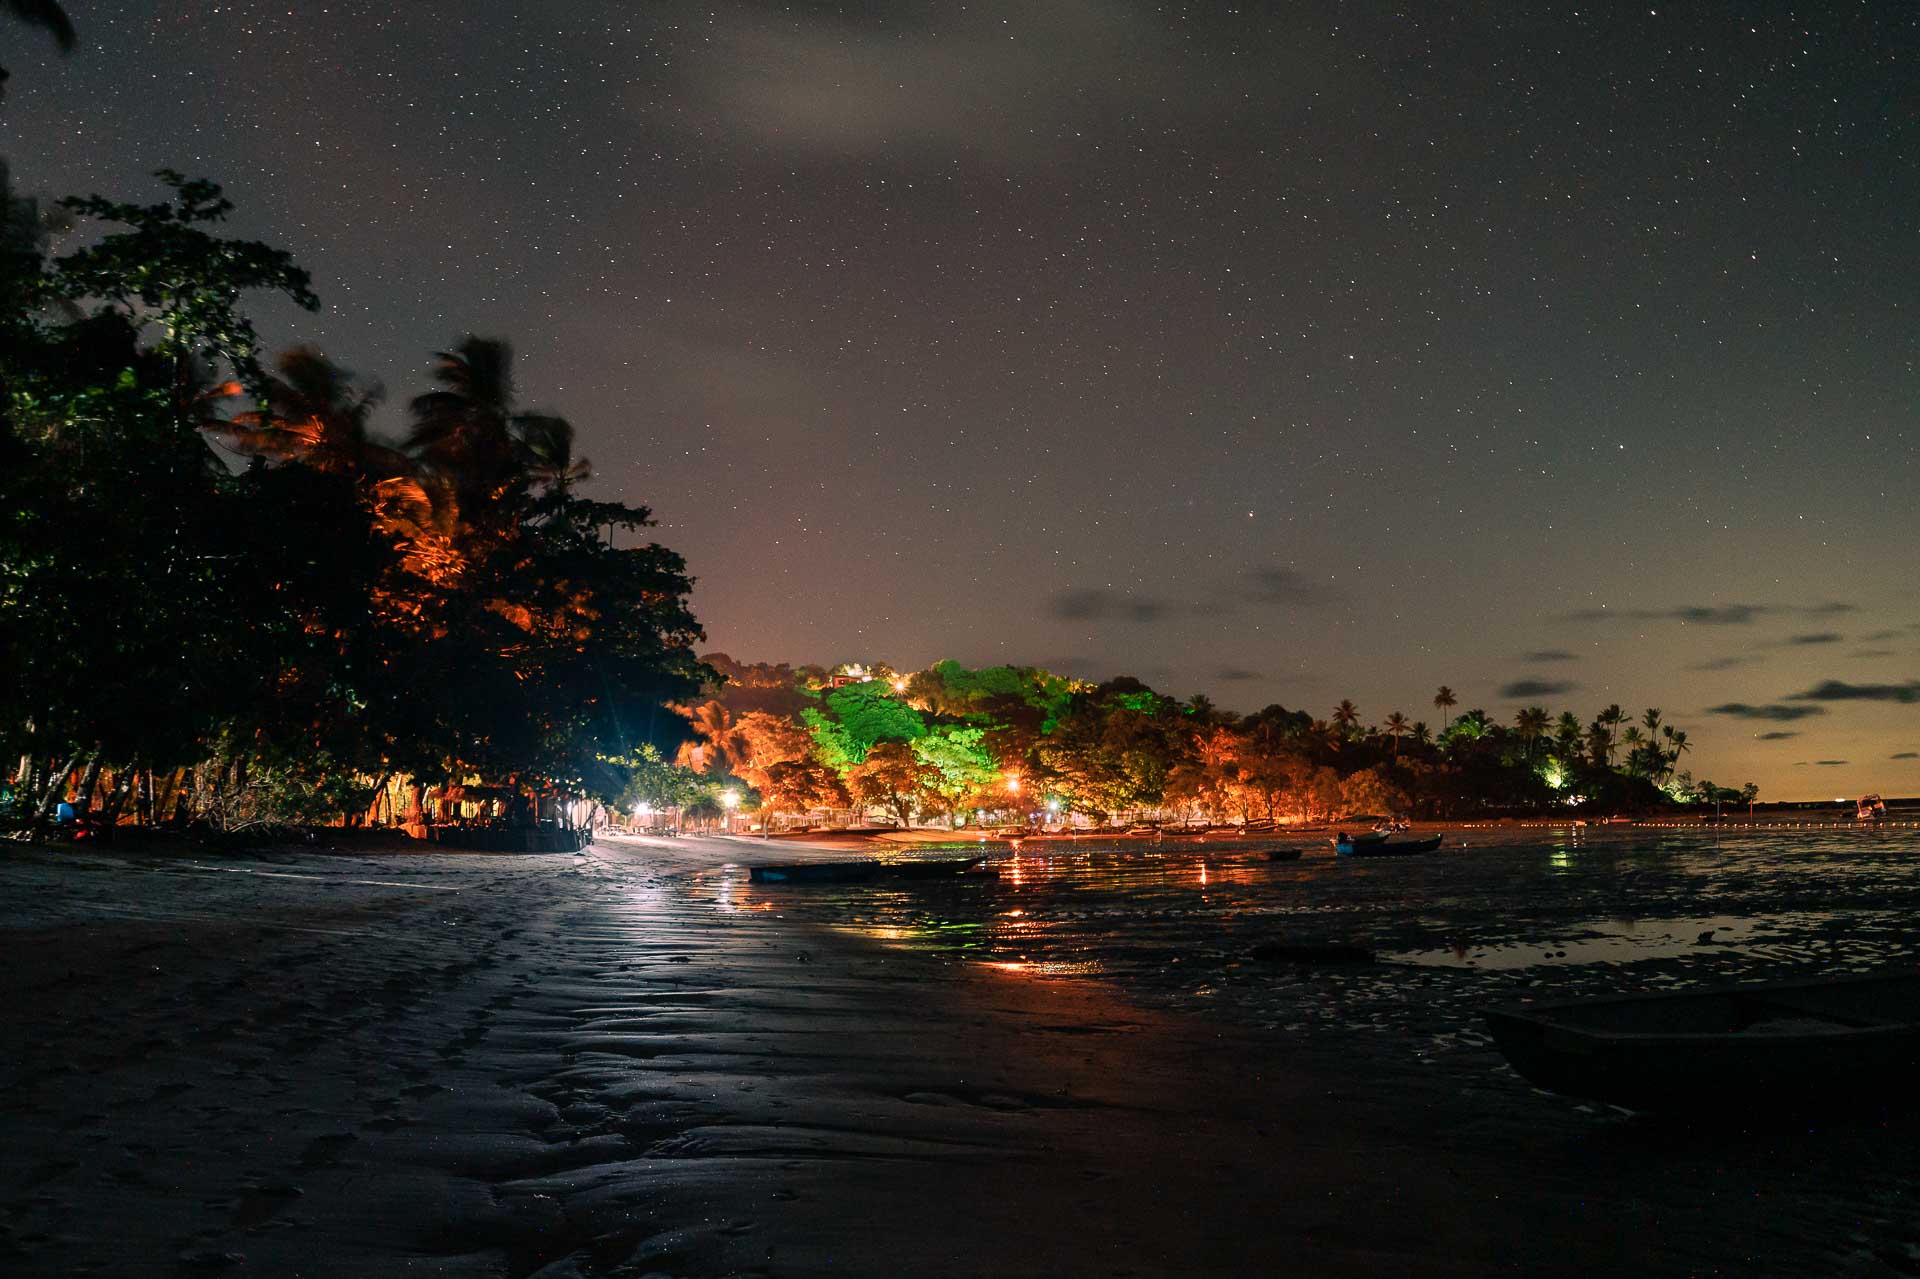 Noite de Boipeba com bares acessos na praia e um céu de boipeba estrelado